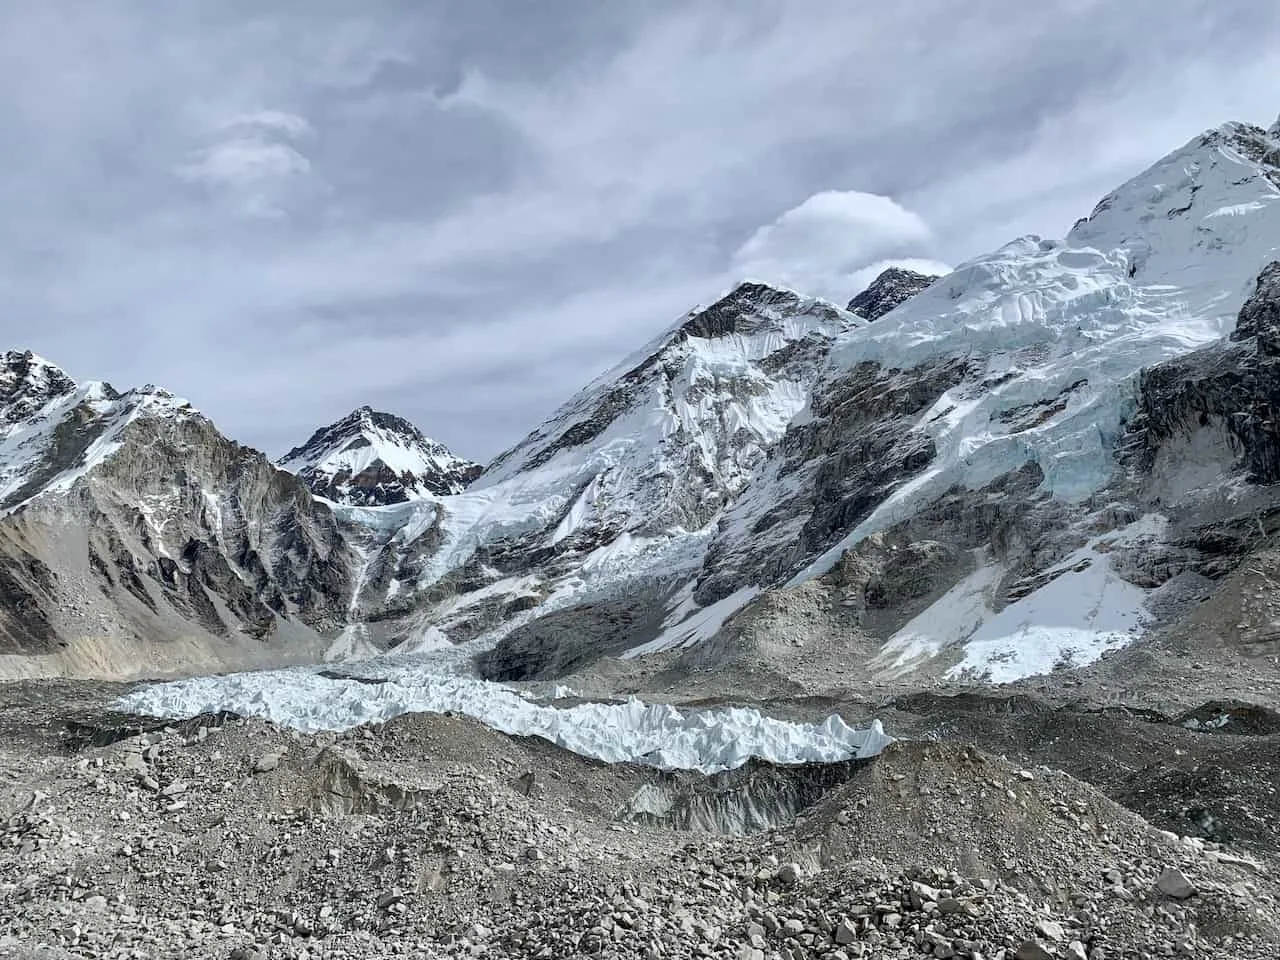 Khumbu Icefall Mount Everest